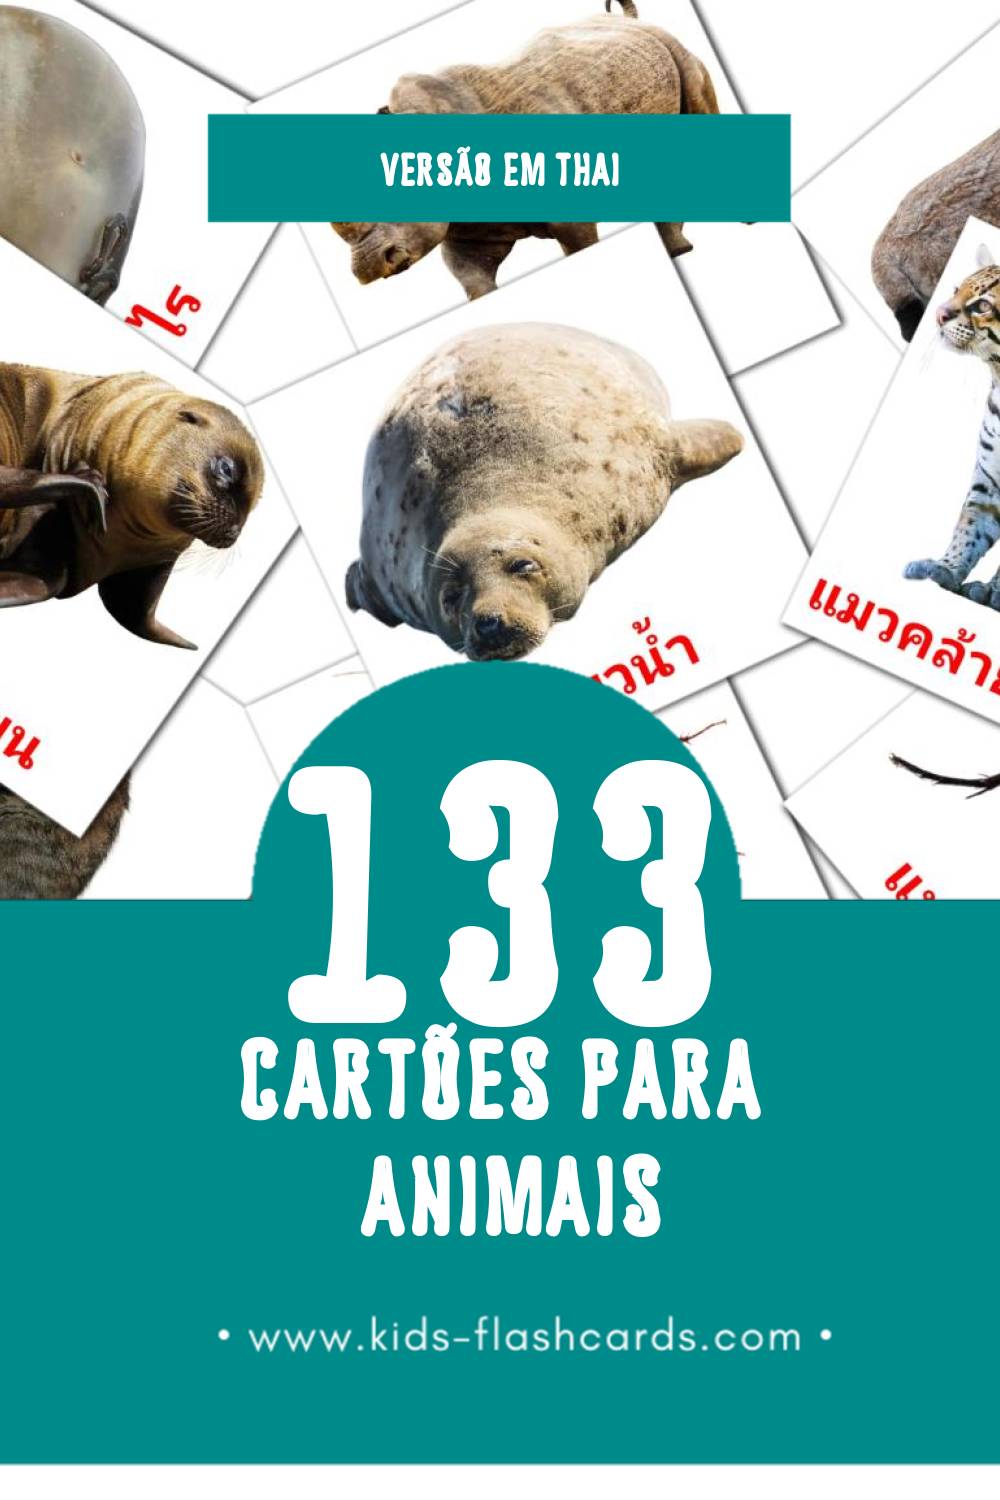 Flashcards de สัตว์โลก Visuais para Toddlers (133 cartões em Thai)